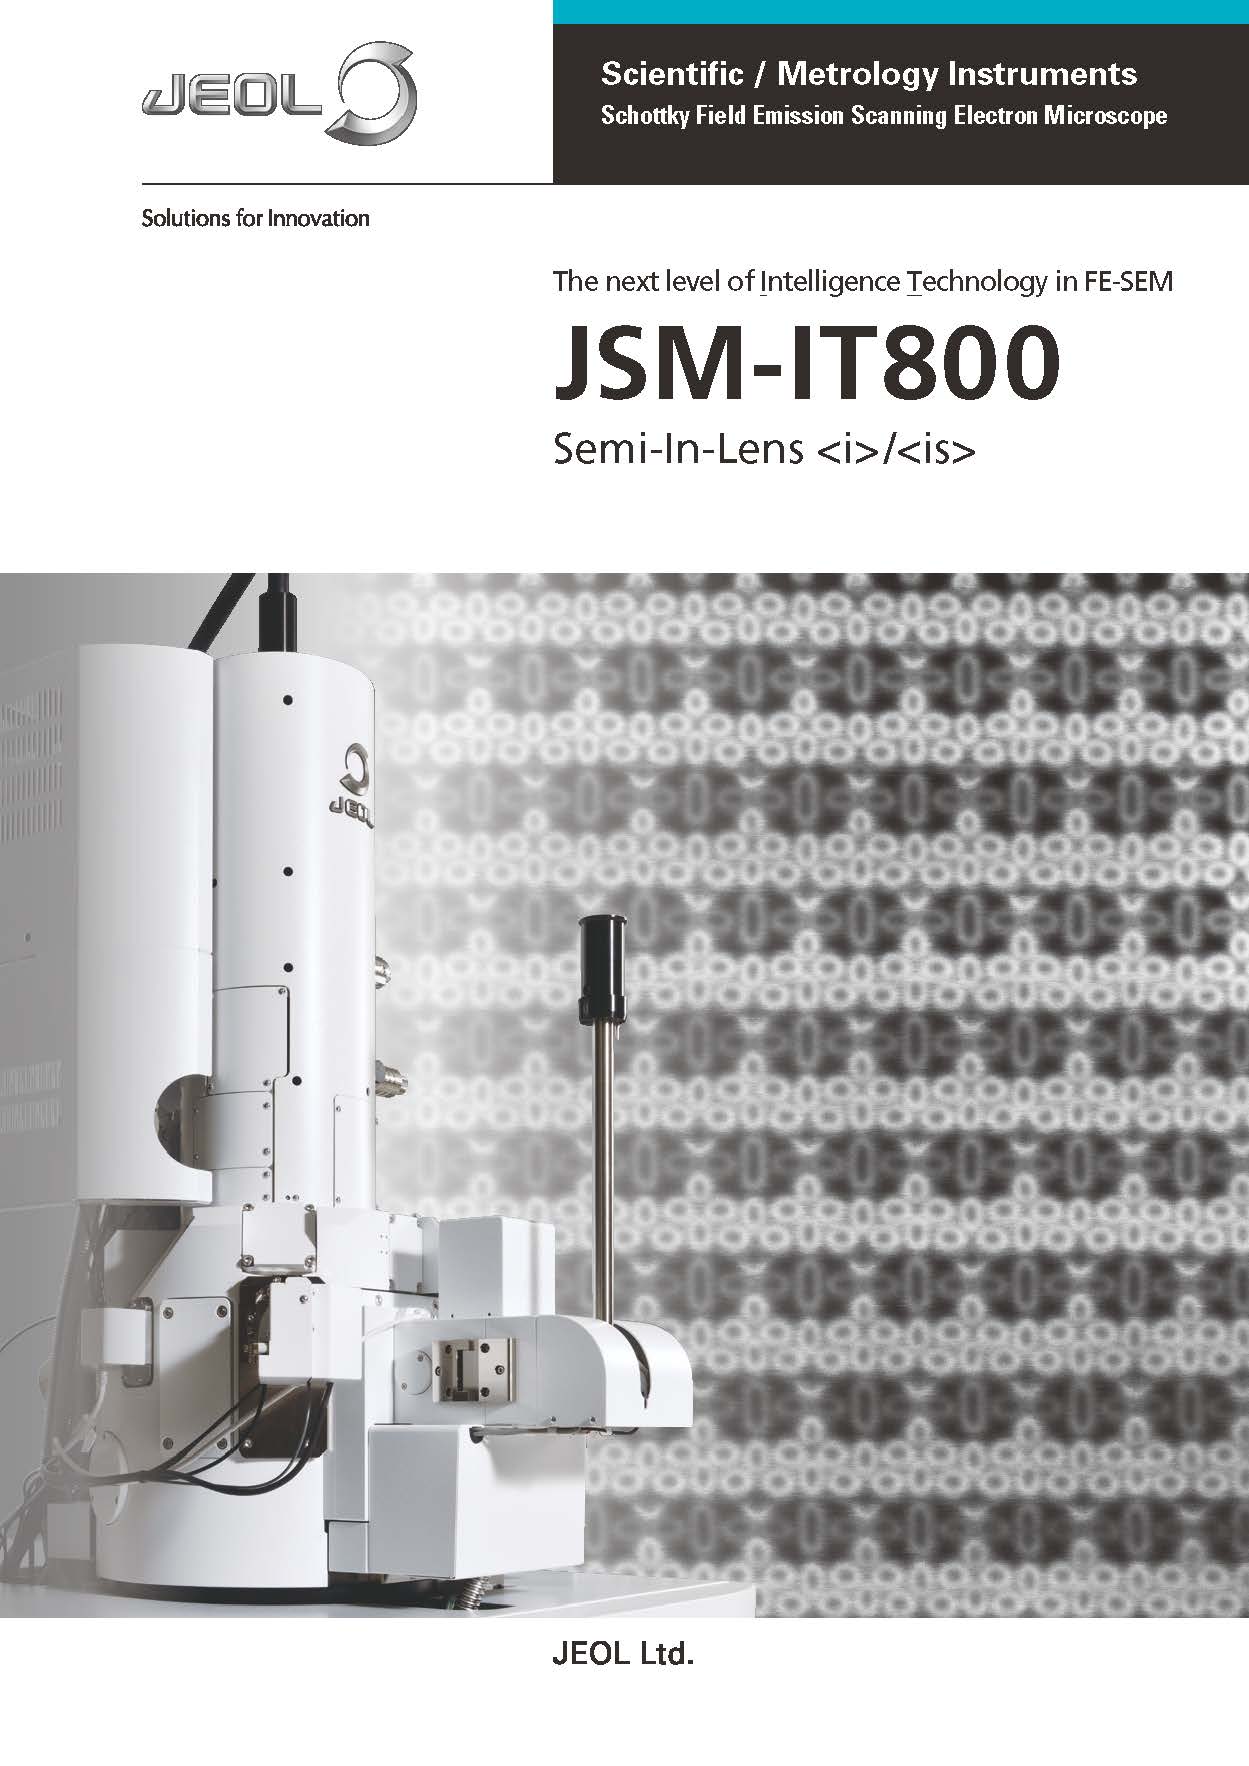 JSM-IT800(i)/(is) 쇼트키 전계 방출 주사 전자 현미경